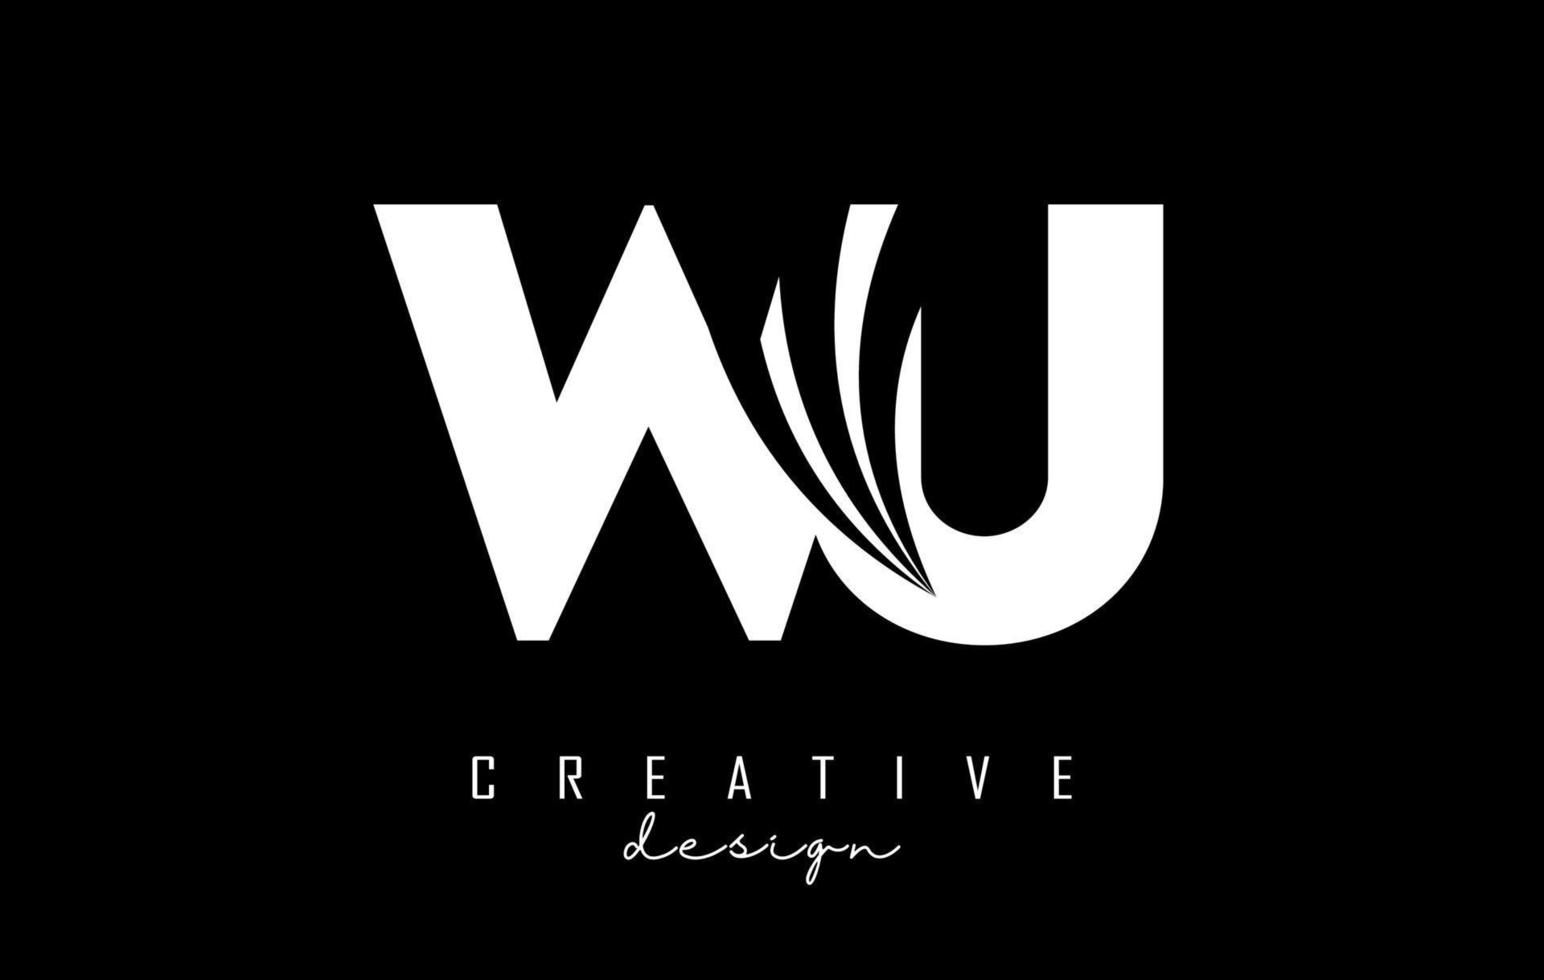 logotipo de wu wu de letras blancas creativas con líneas principales y diseño de concepto de carretera. letras con diseño geométrico. vector